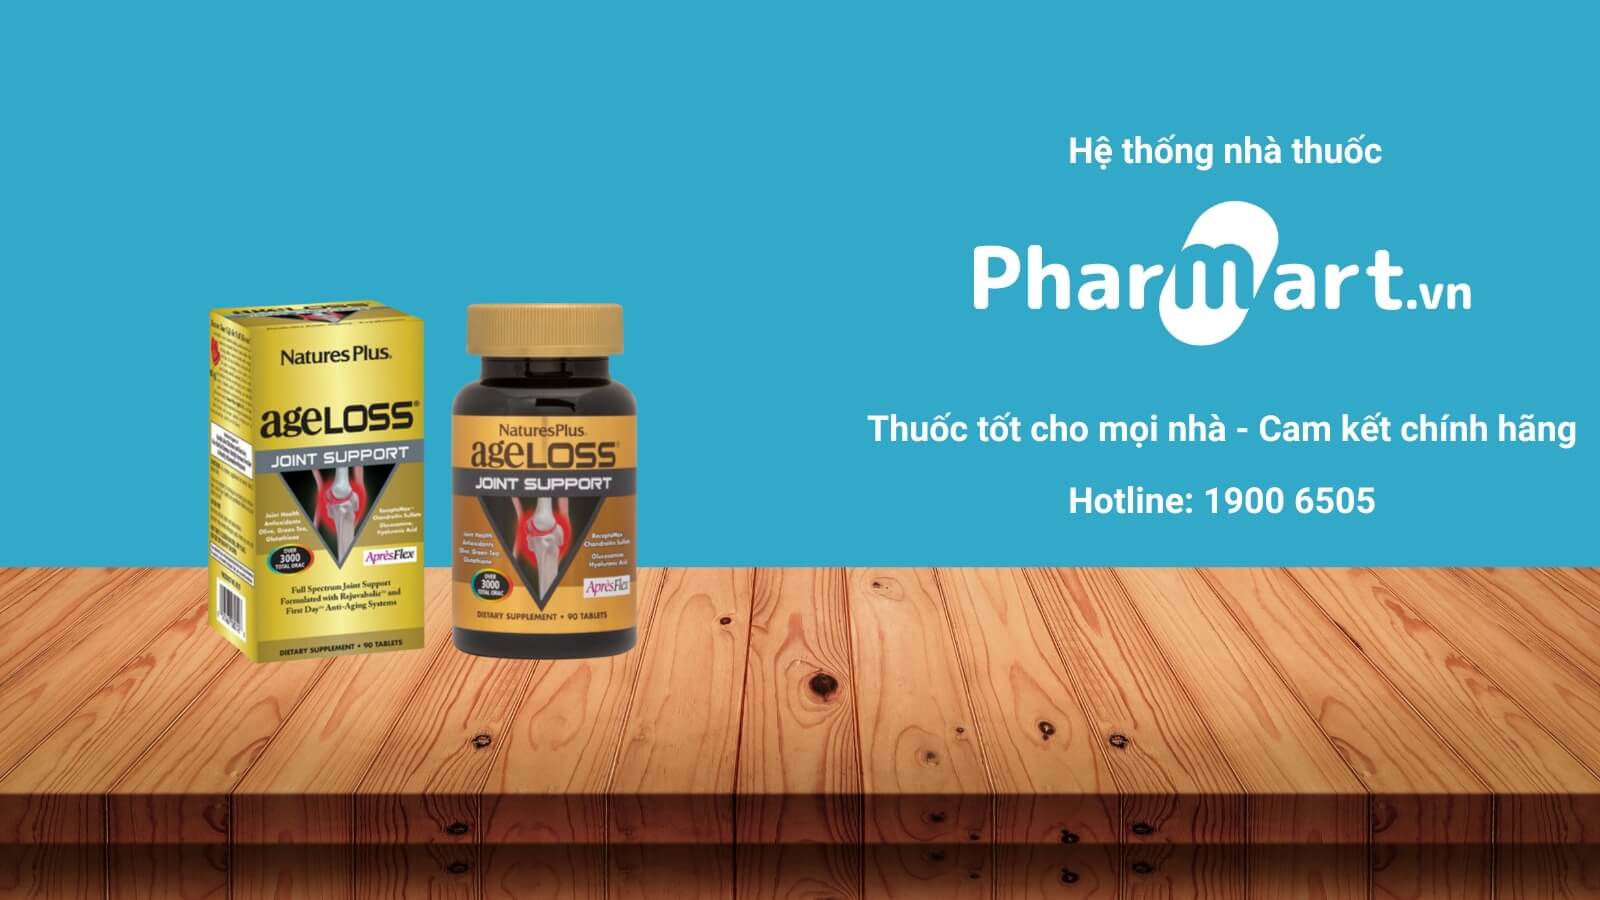 Mua AgeLoss Kidney Support chính hãng tại Pharmart.vn 